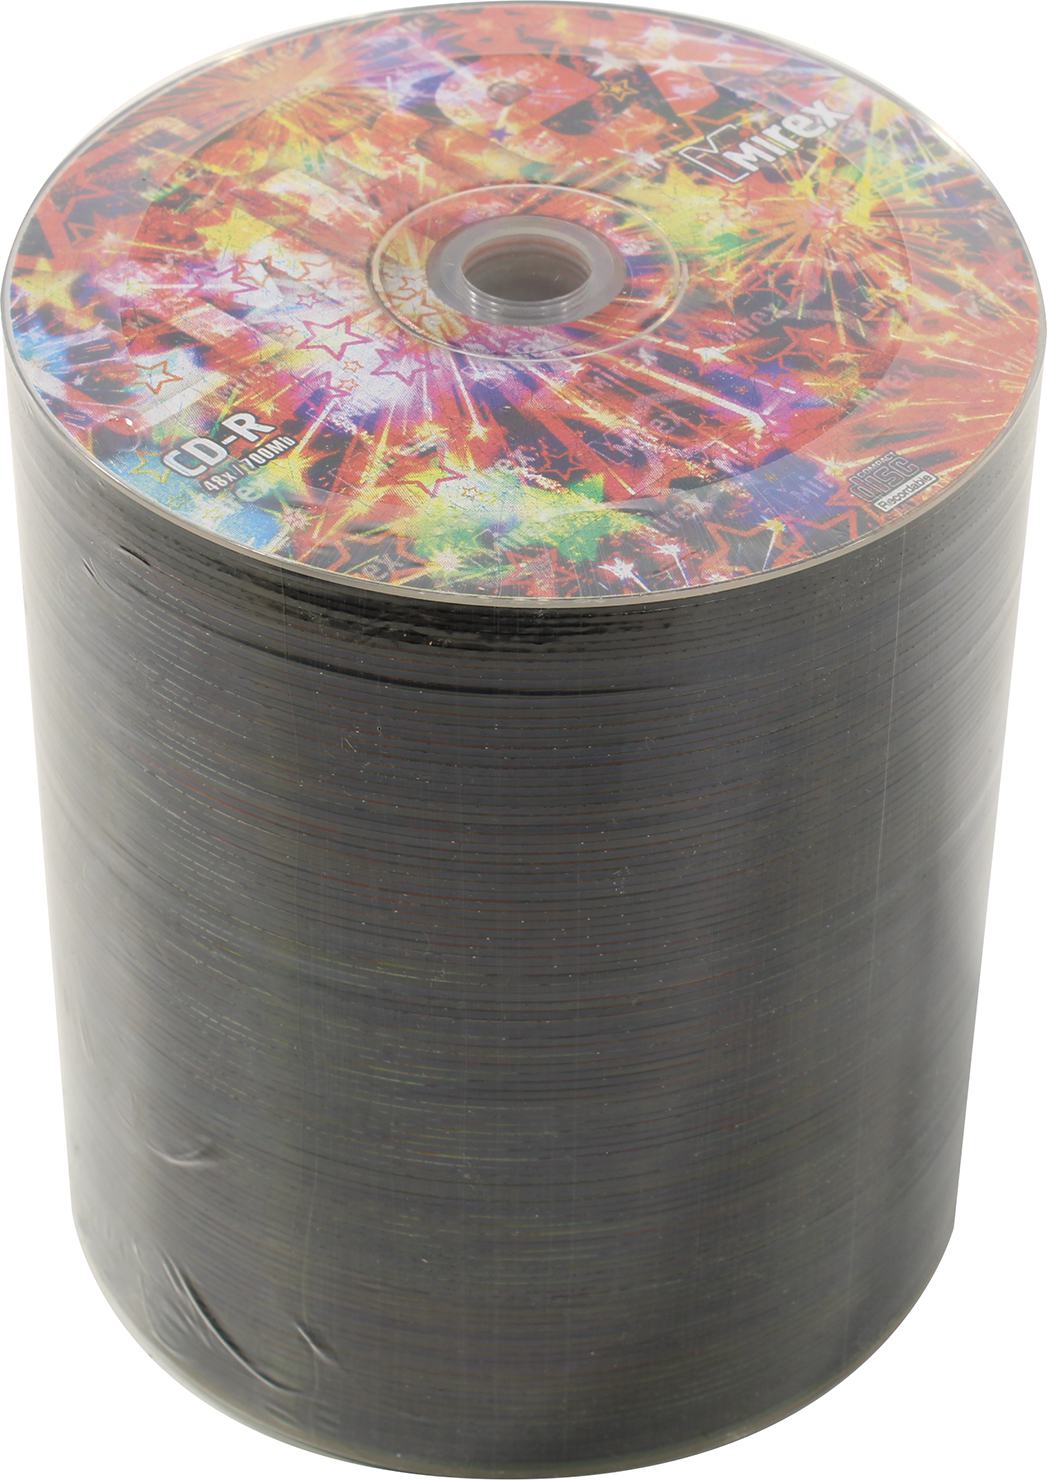 Диск Mirex CD-R, 700Mb, 48x, термопленка, 100 шт, Printable (053803)